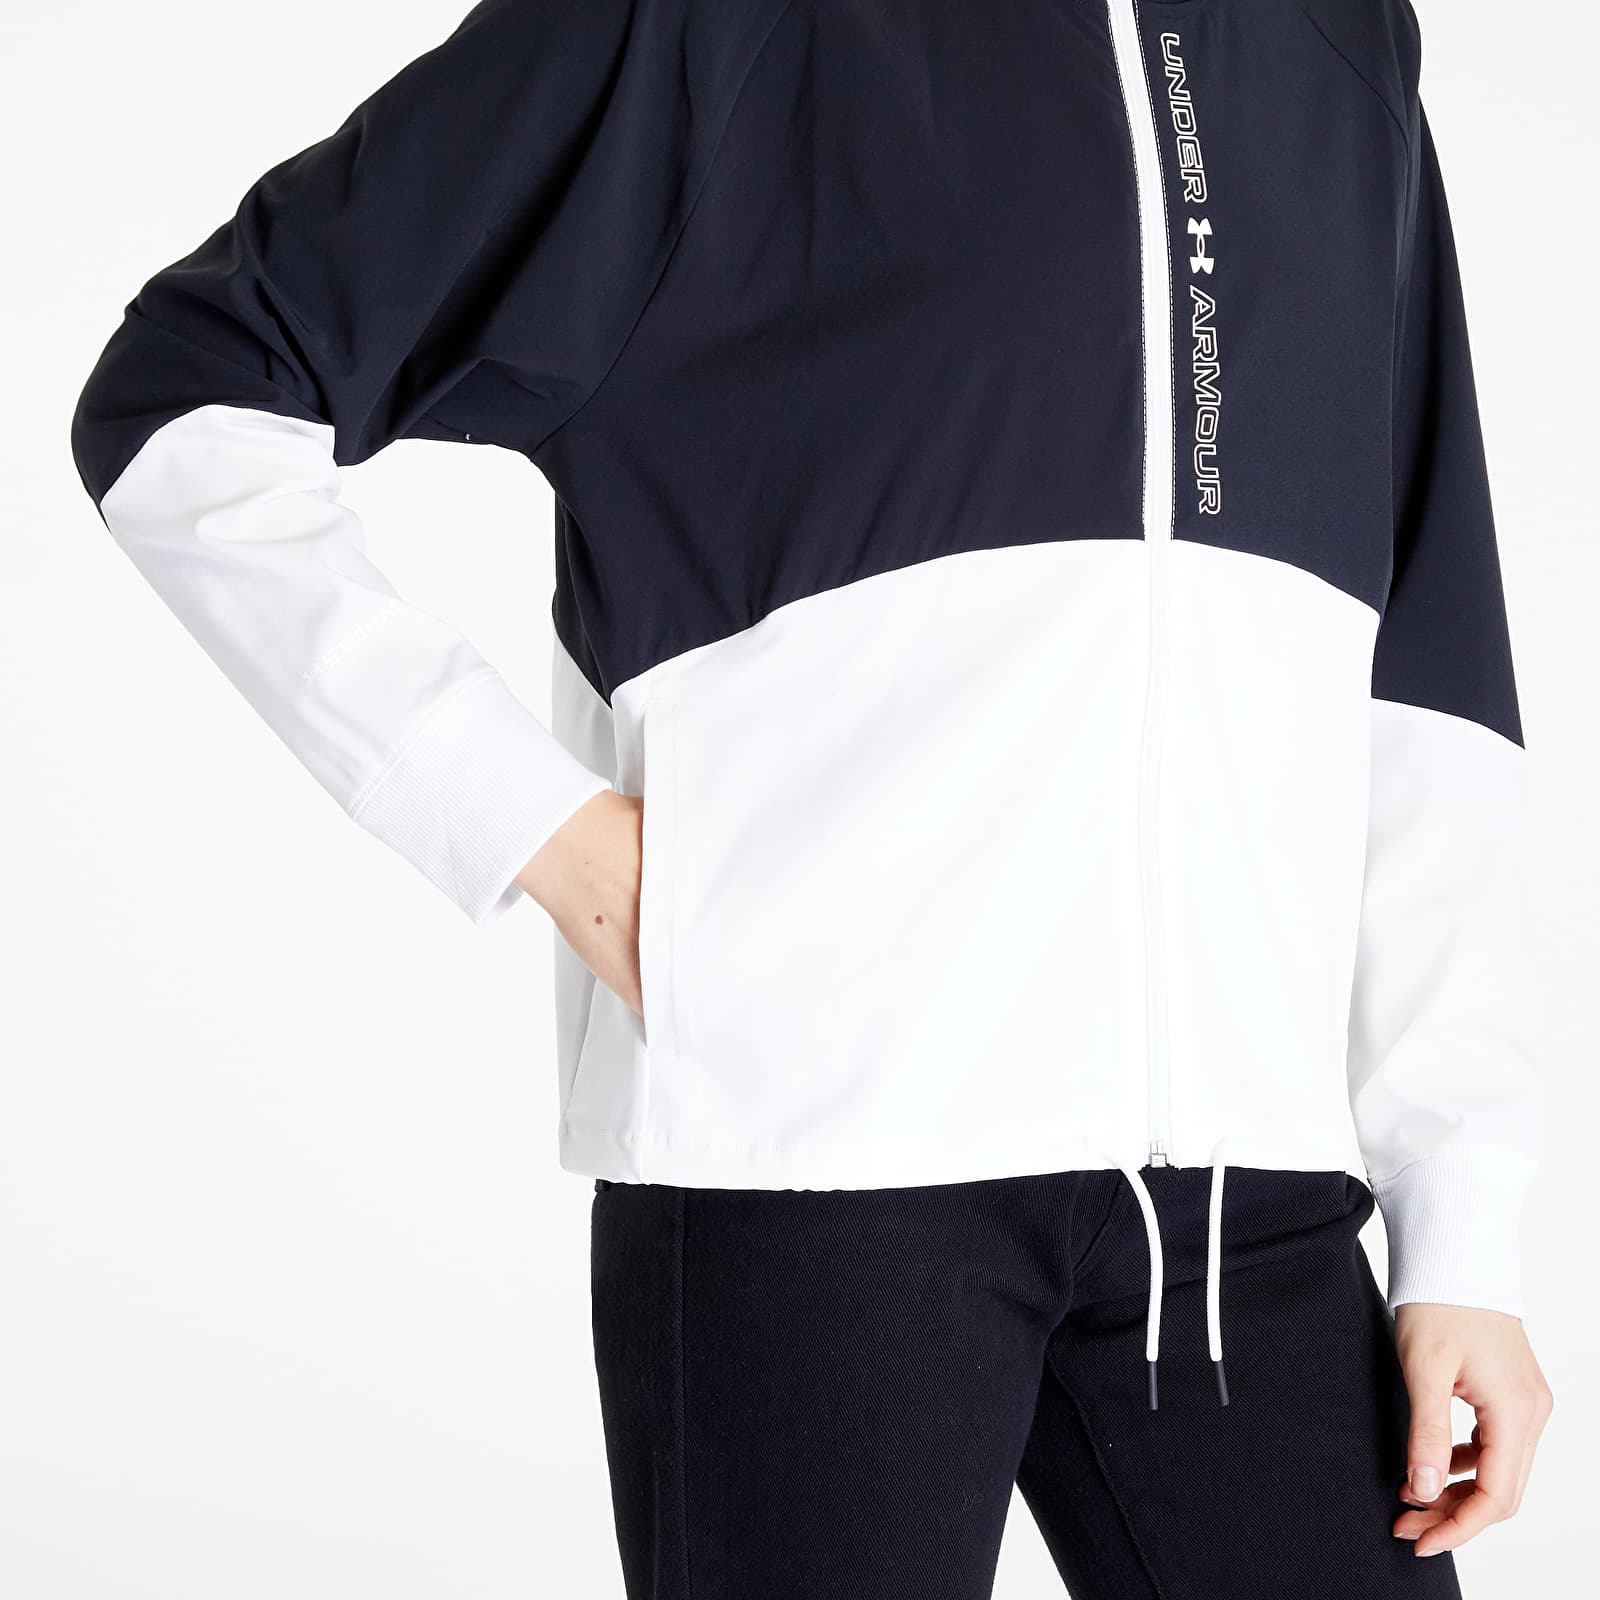  Woven Graphic Jacket, White - women's jacket - UNDER ARMOUR  - 61.06 € - outdoorové oblečení a vybavení shop